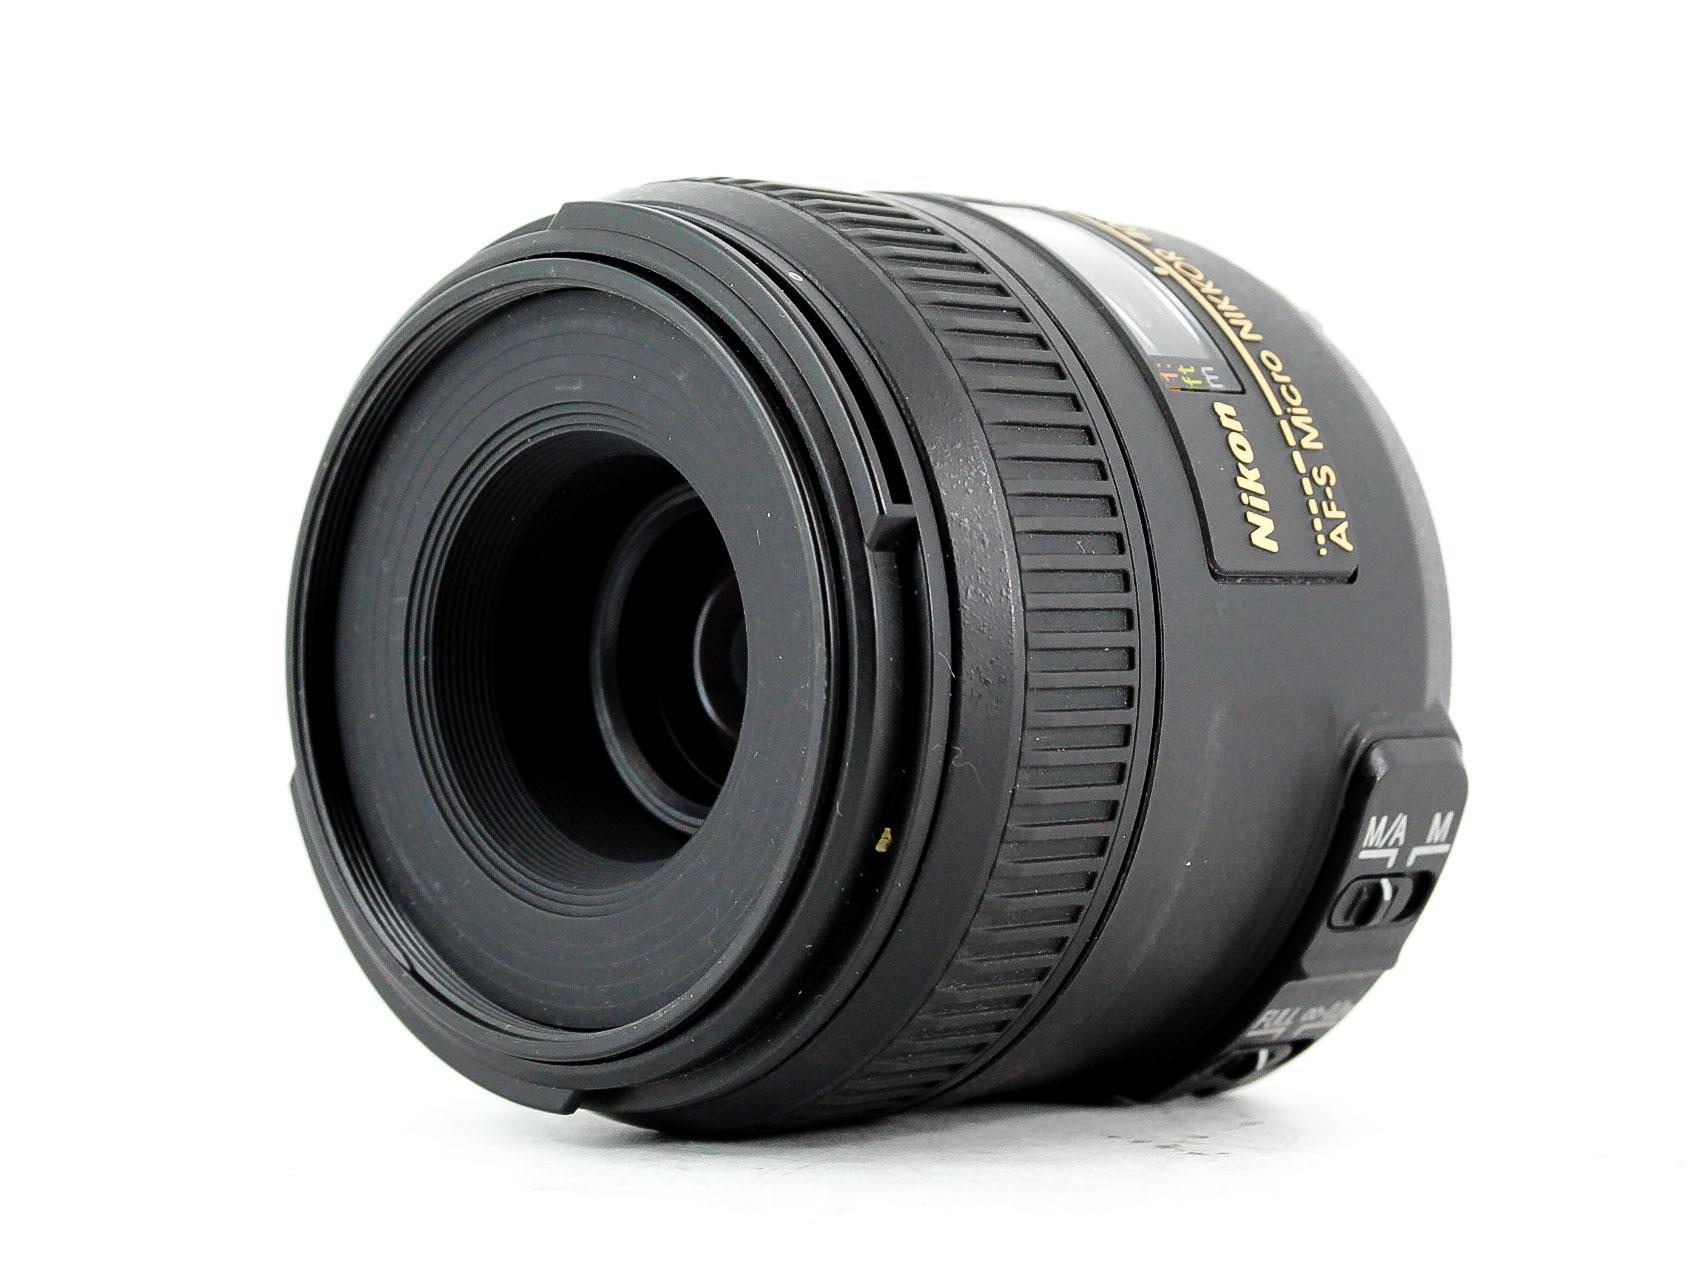 Nikon AF-S DX 40mm F2.8G Micro Lens - Lenses and Cameras